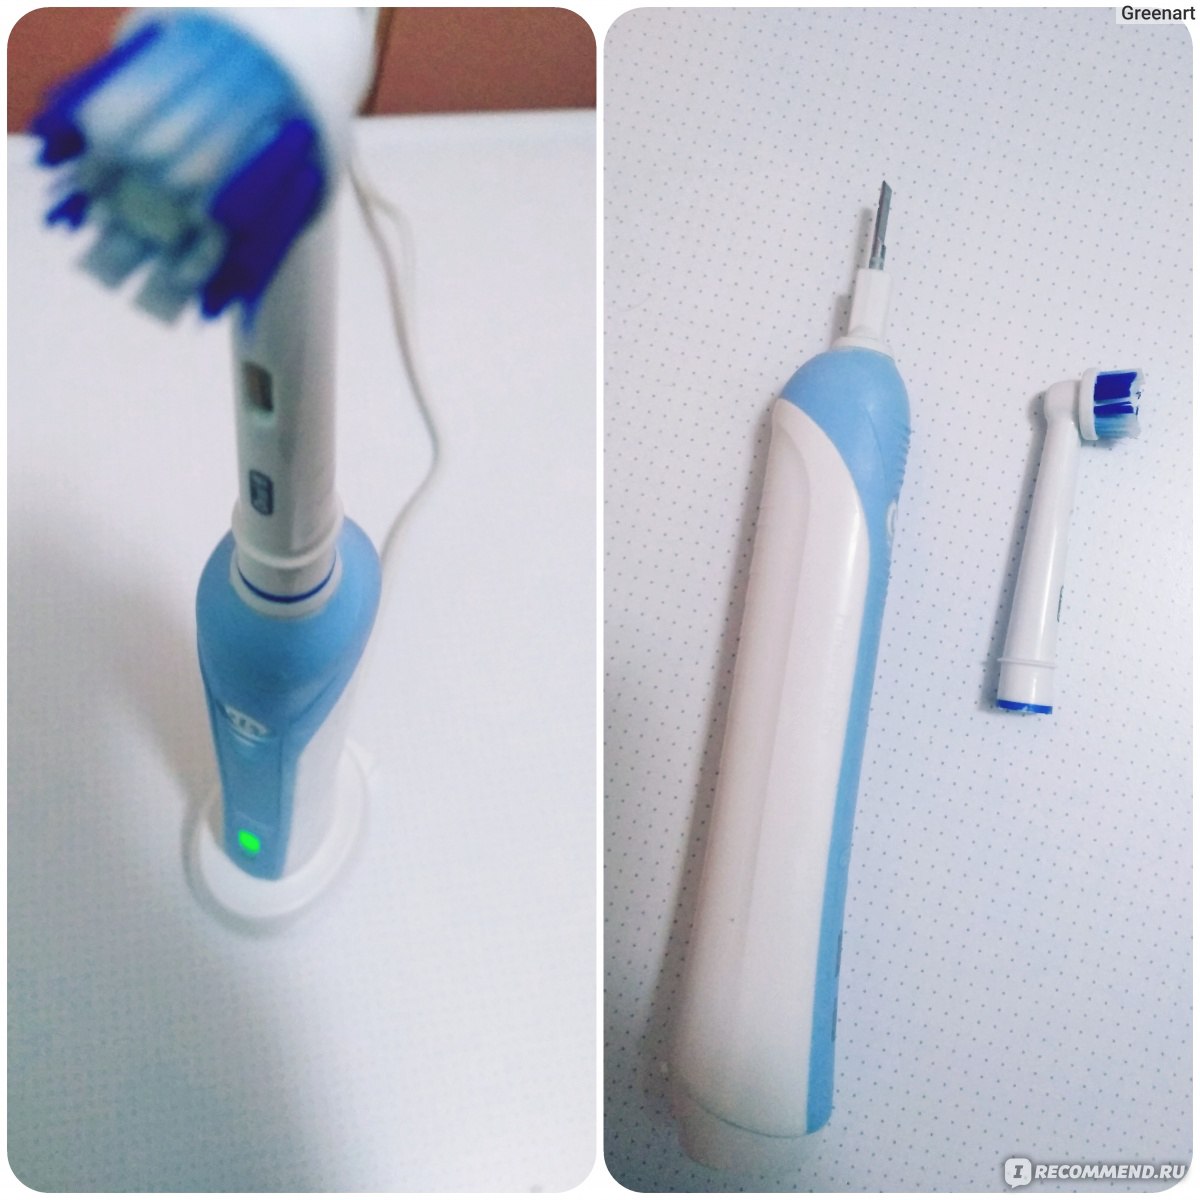 Электрическая щетка с датчиком давления браун или филипс электрическая зубная щетка